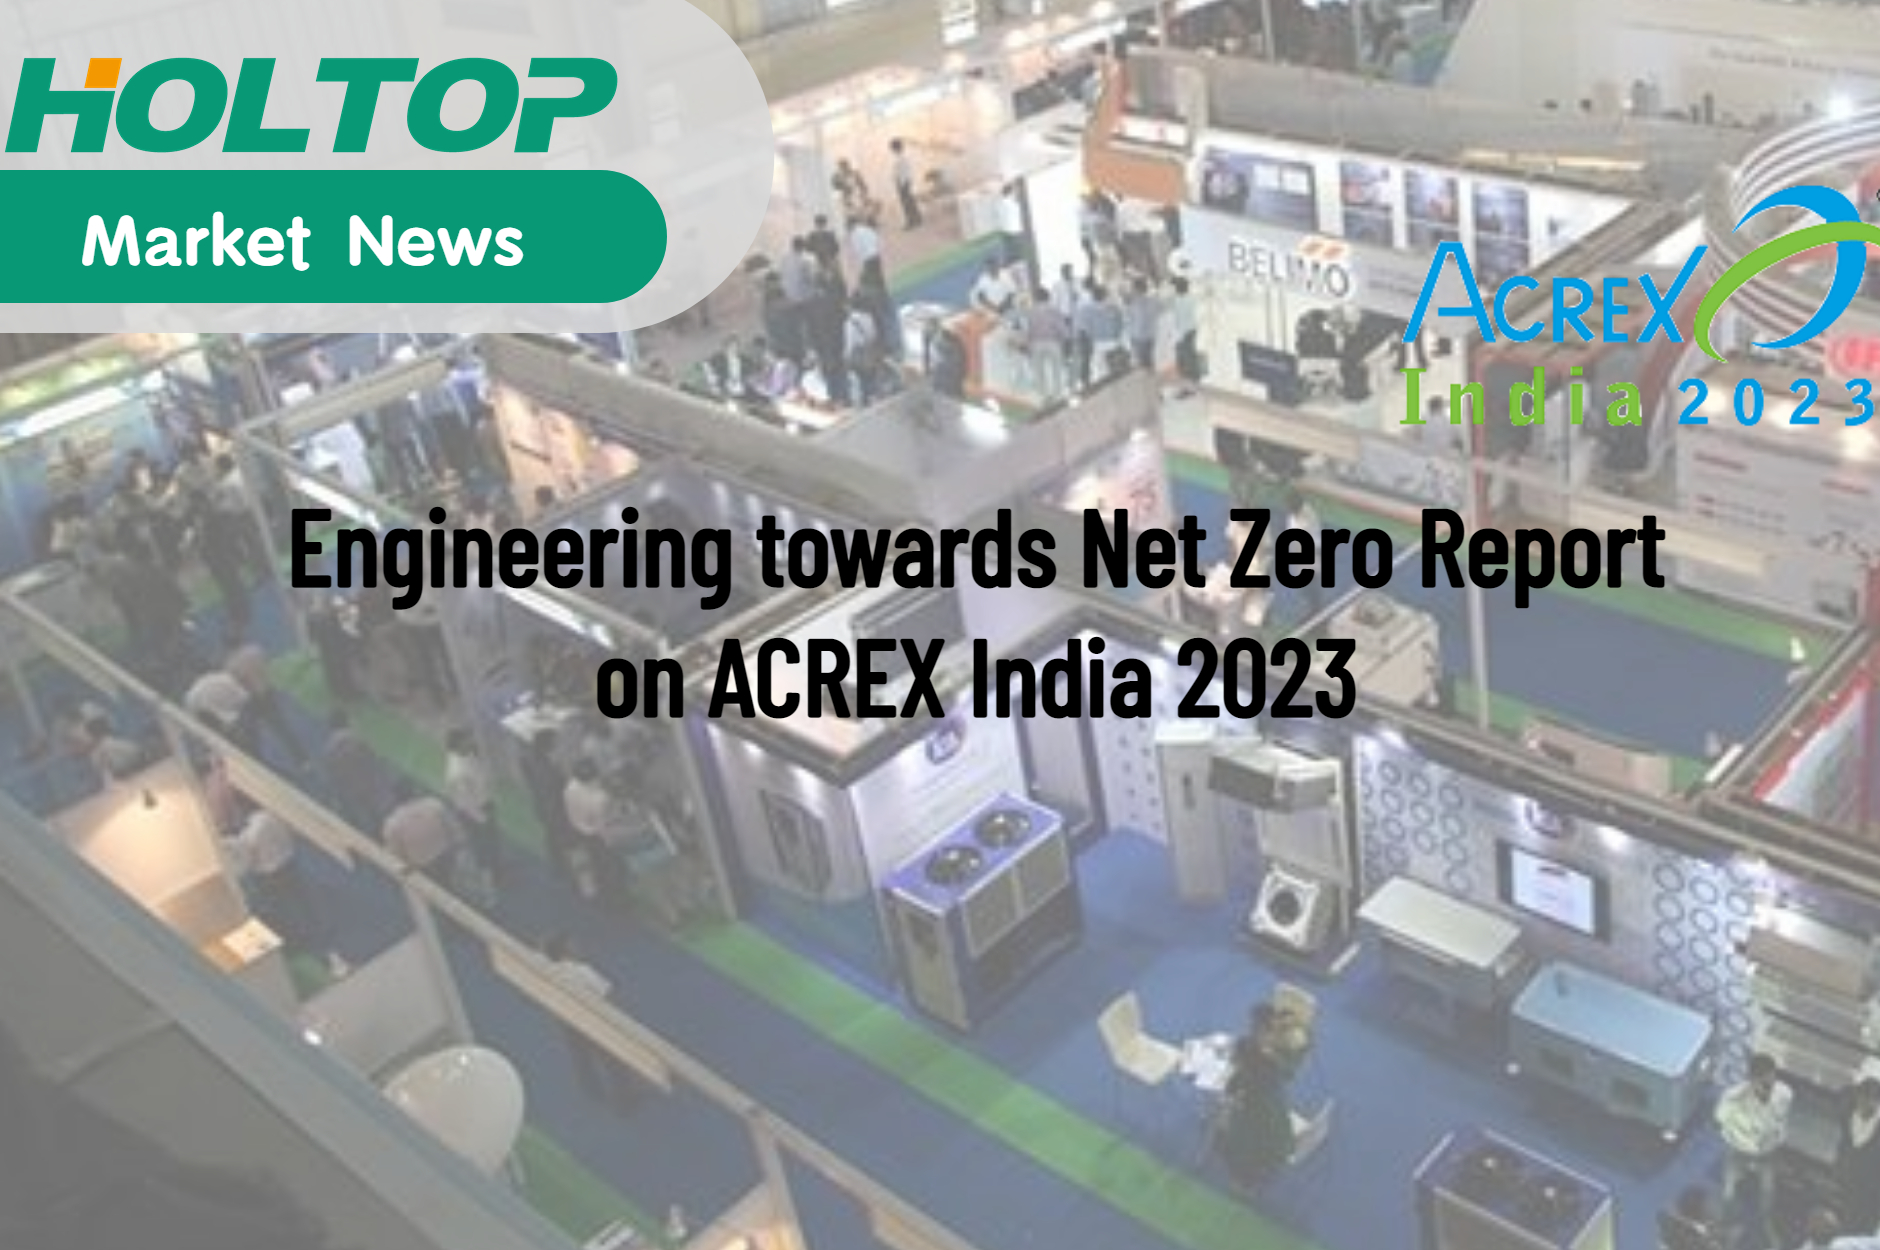 Инжиниринг на пути к Net Zero — отчет об ACREX India 2023